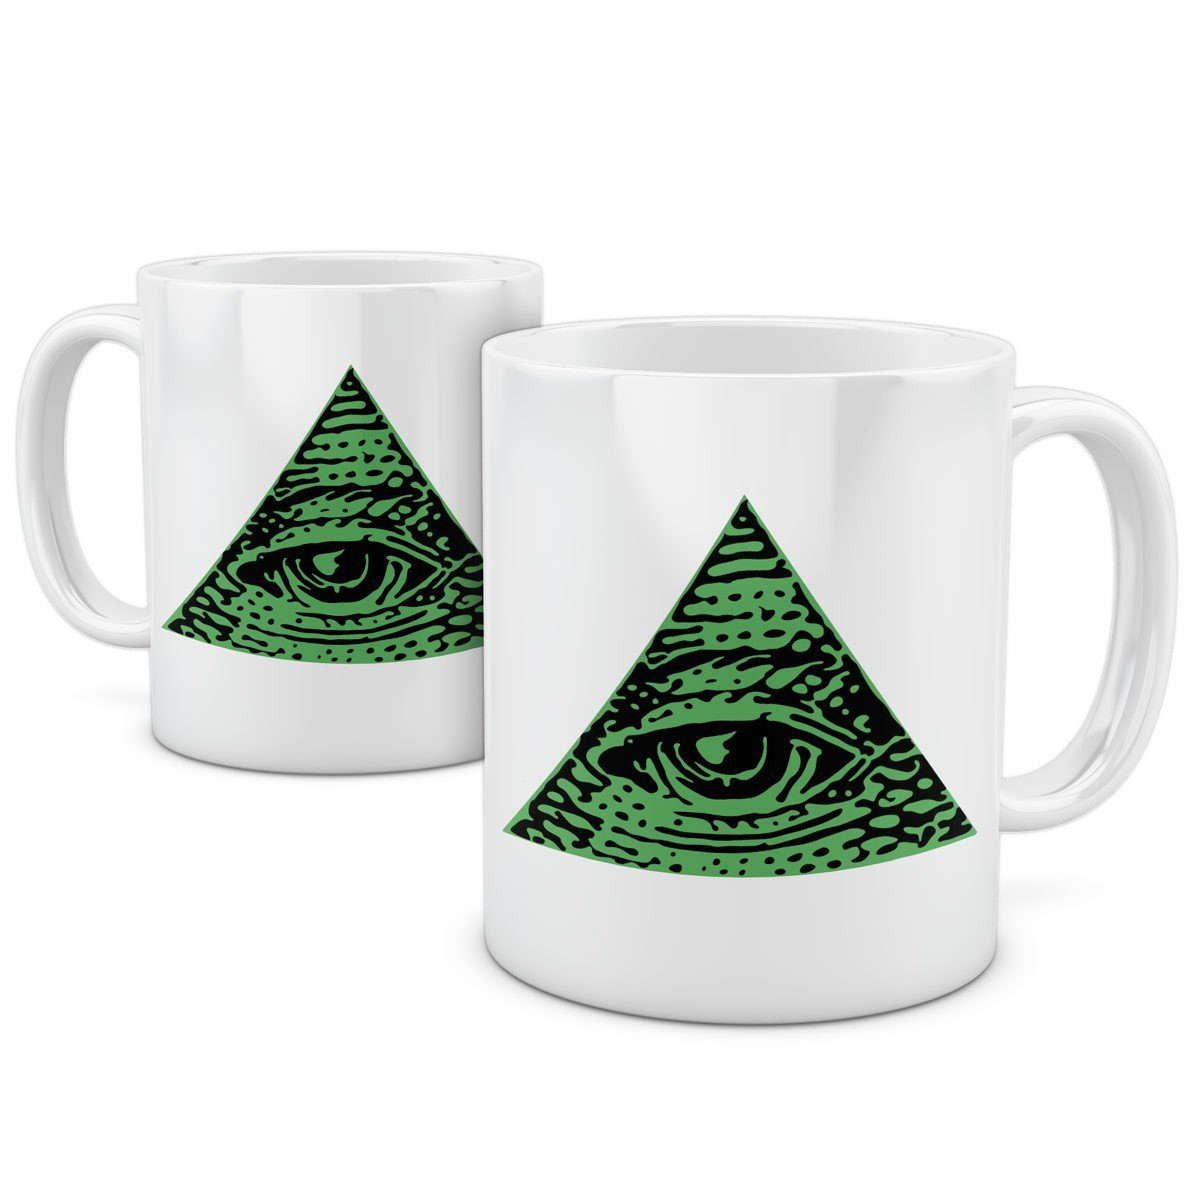 Kaffeebecher style3 der Auge drittes Tasse, Vorsehung verschwörung Tasse Keramik, allsehendes illuminati